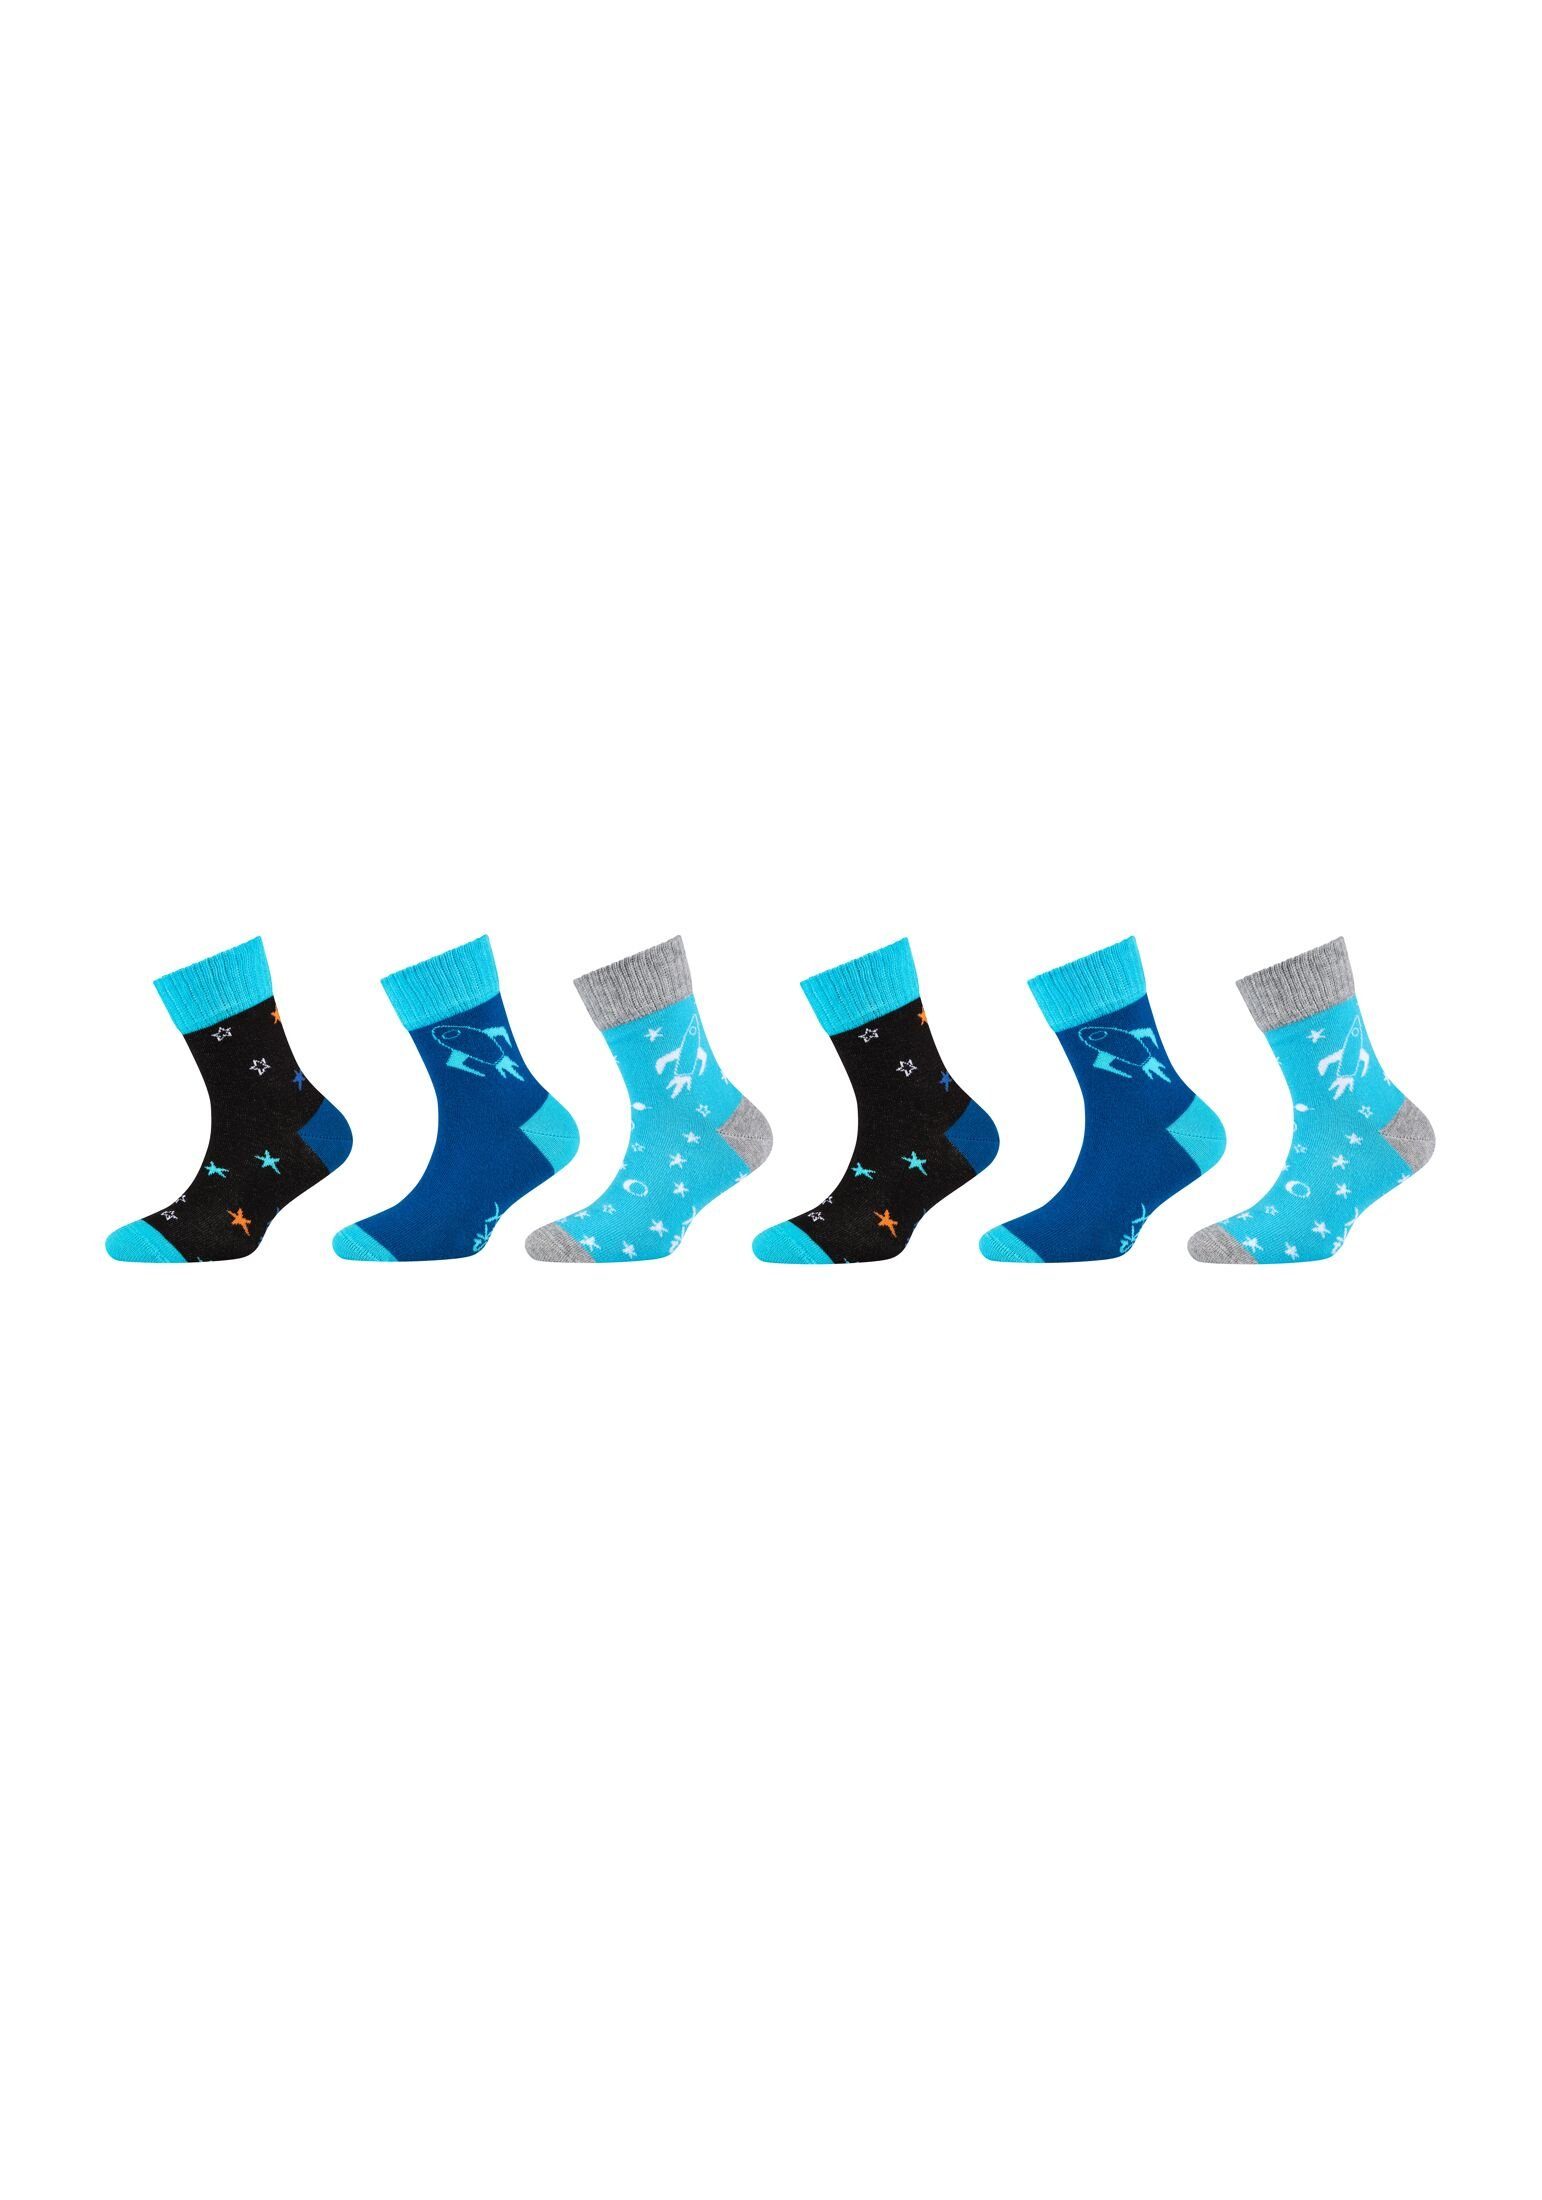 Skechers Socken Socken 6er blue Pack mix